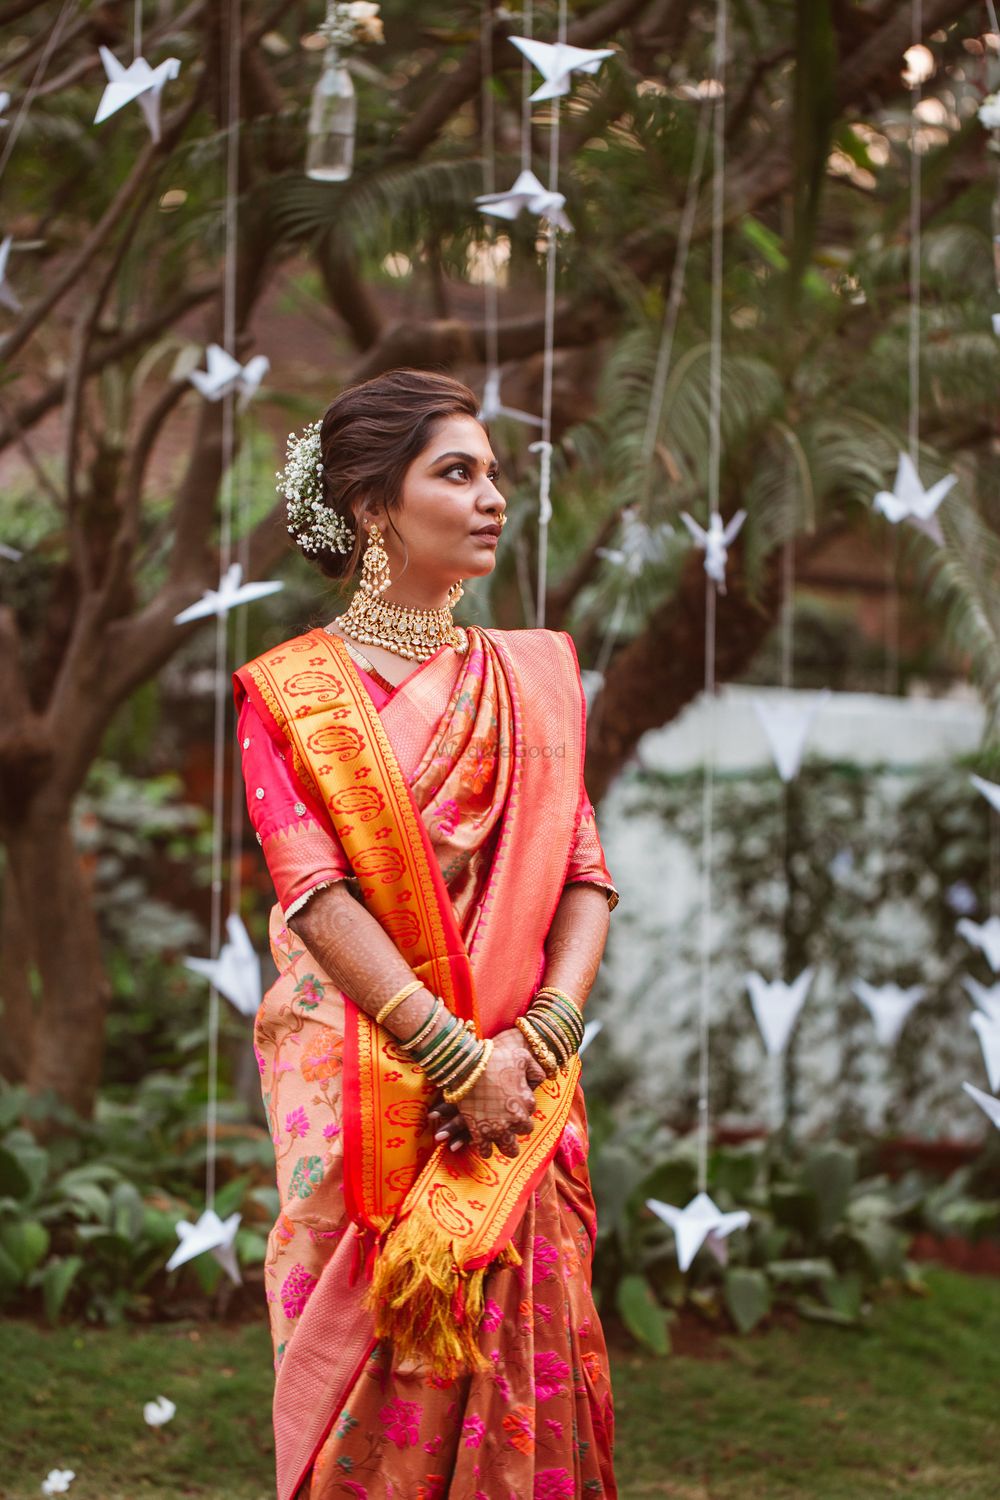 Photo of Bride in orange saree against paper decor